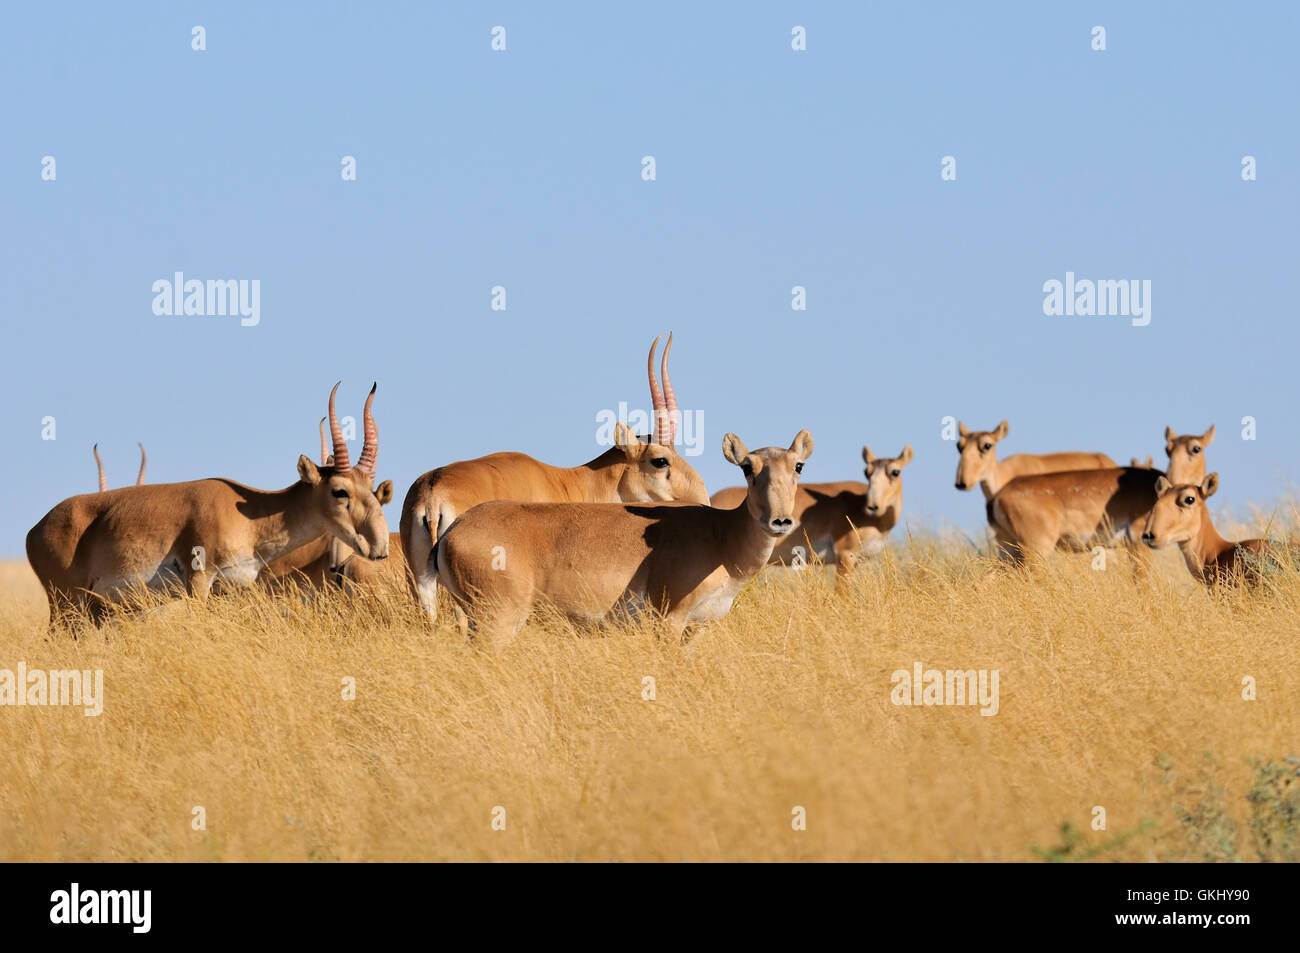 Critically endangered wild Saiga antelopes (Saiga tatarica) in steppe. Stock Photo